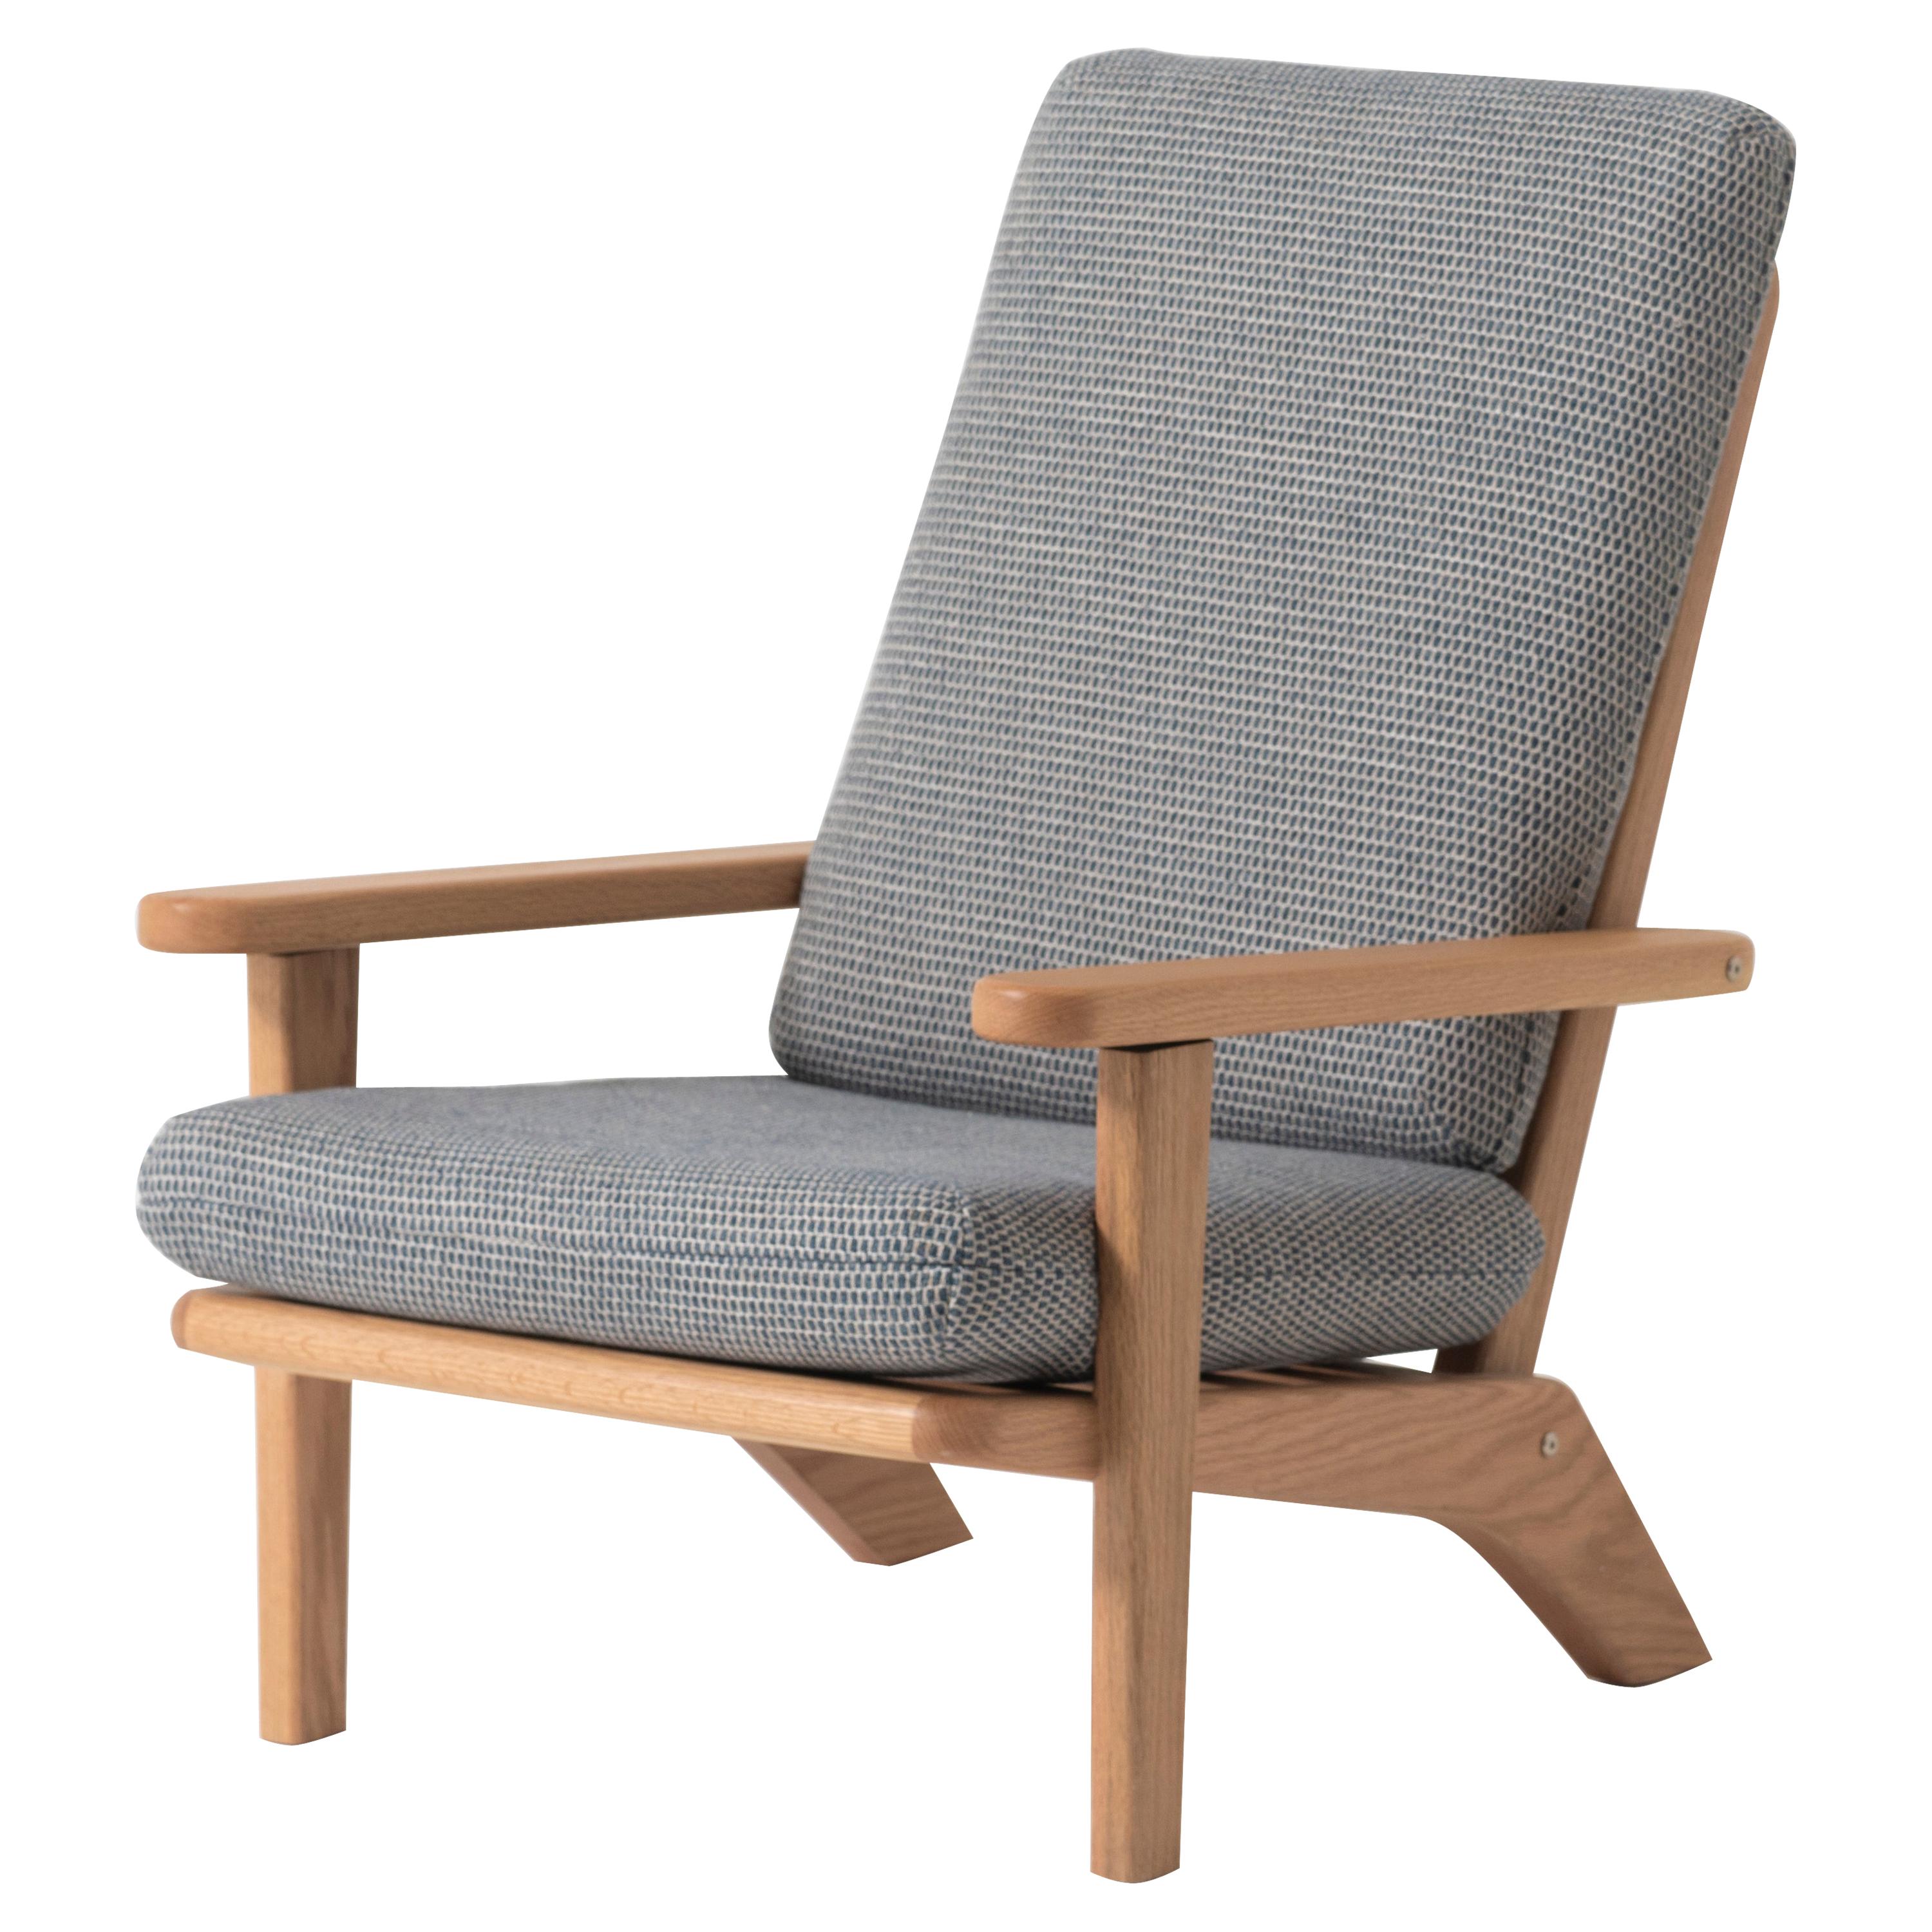 Silla Lounge de madera maciza de roble con cojín textil gris y respaldo reclinable